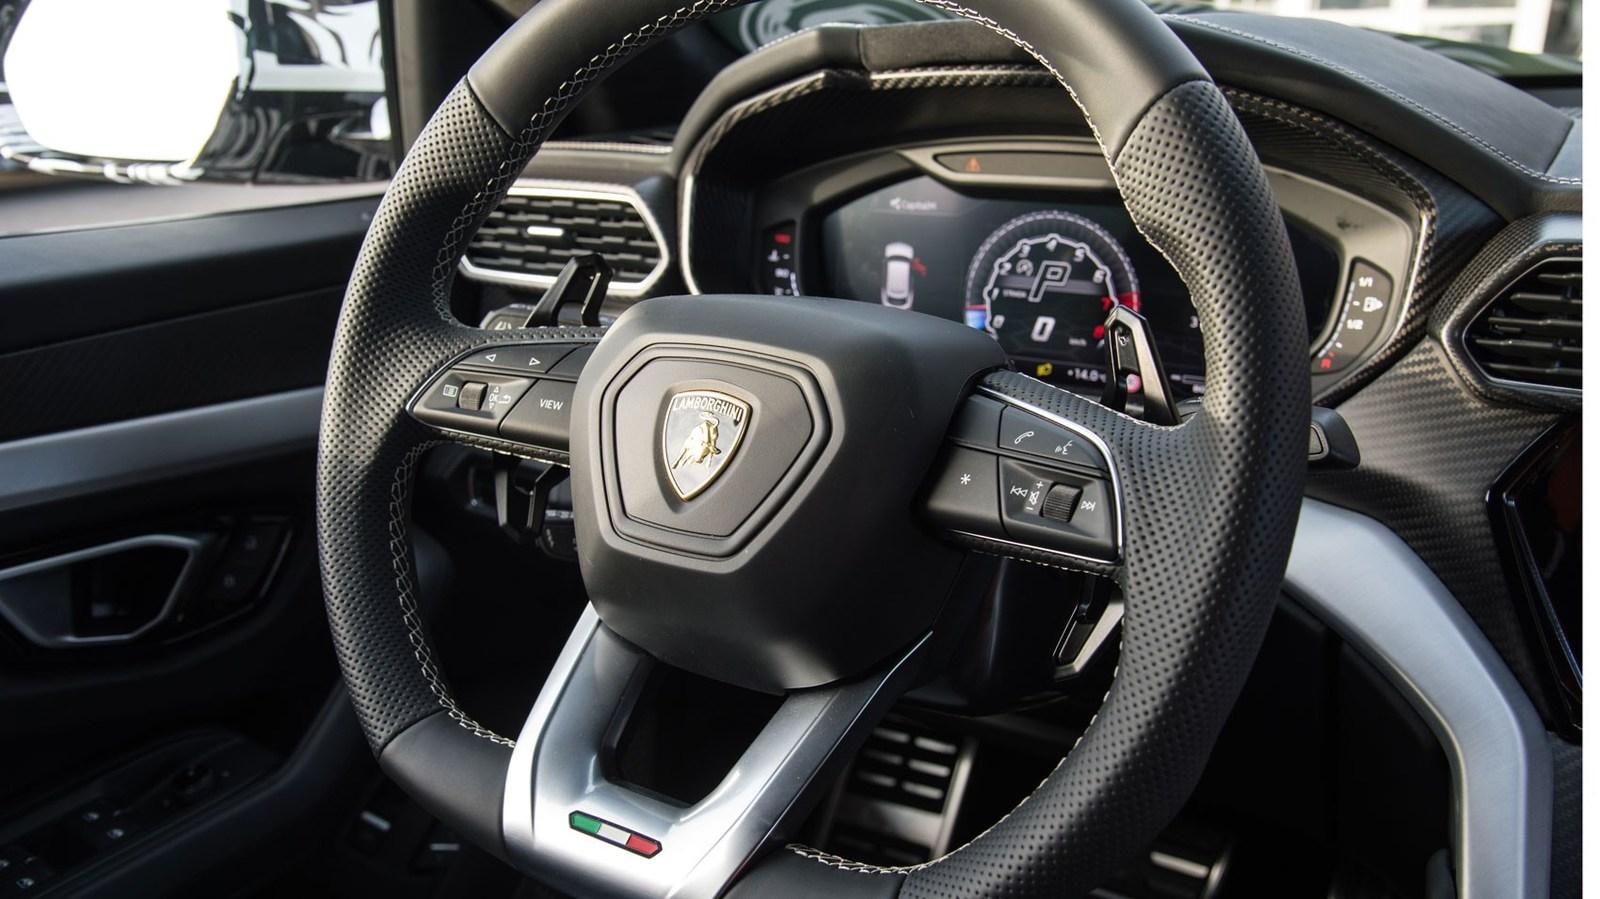 Poze Masini Tari - Lamborghini Urus - Interior - 491108